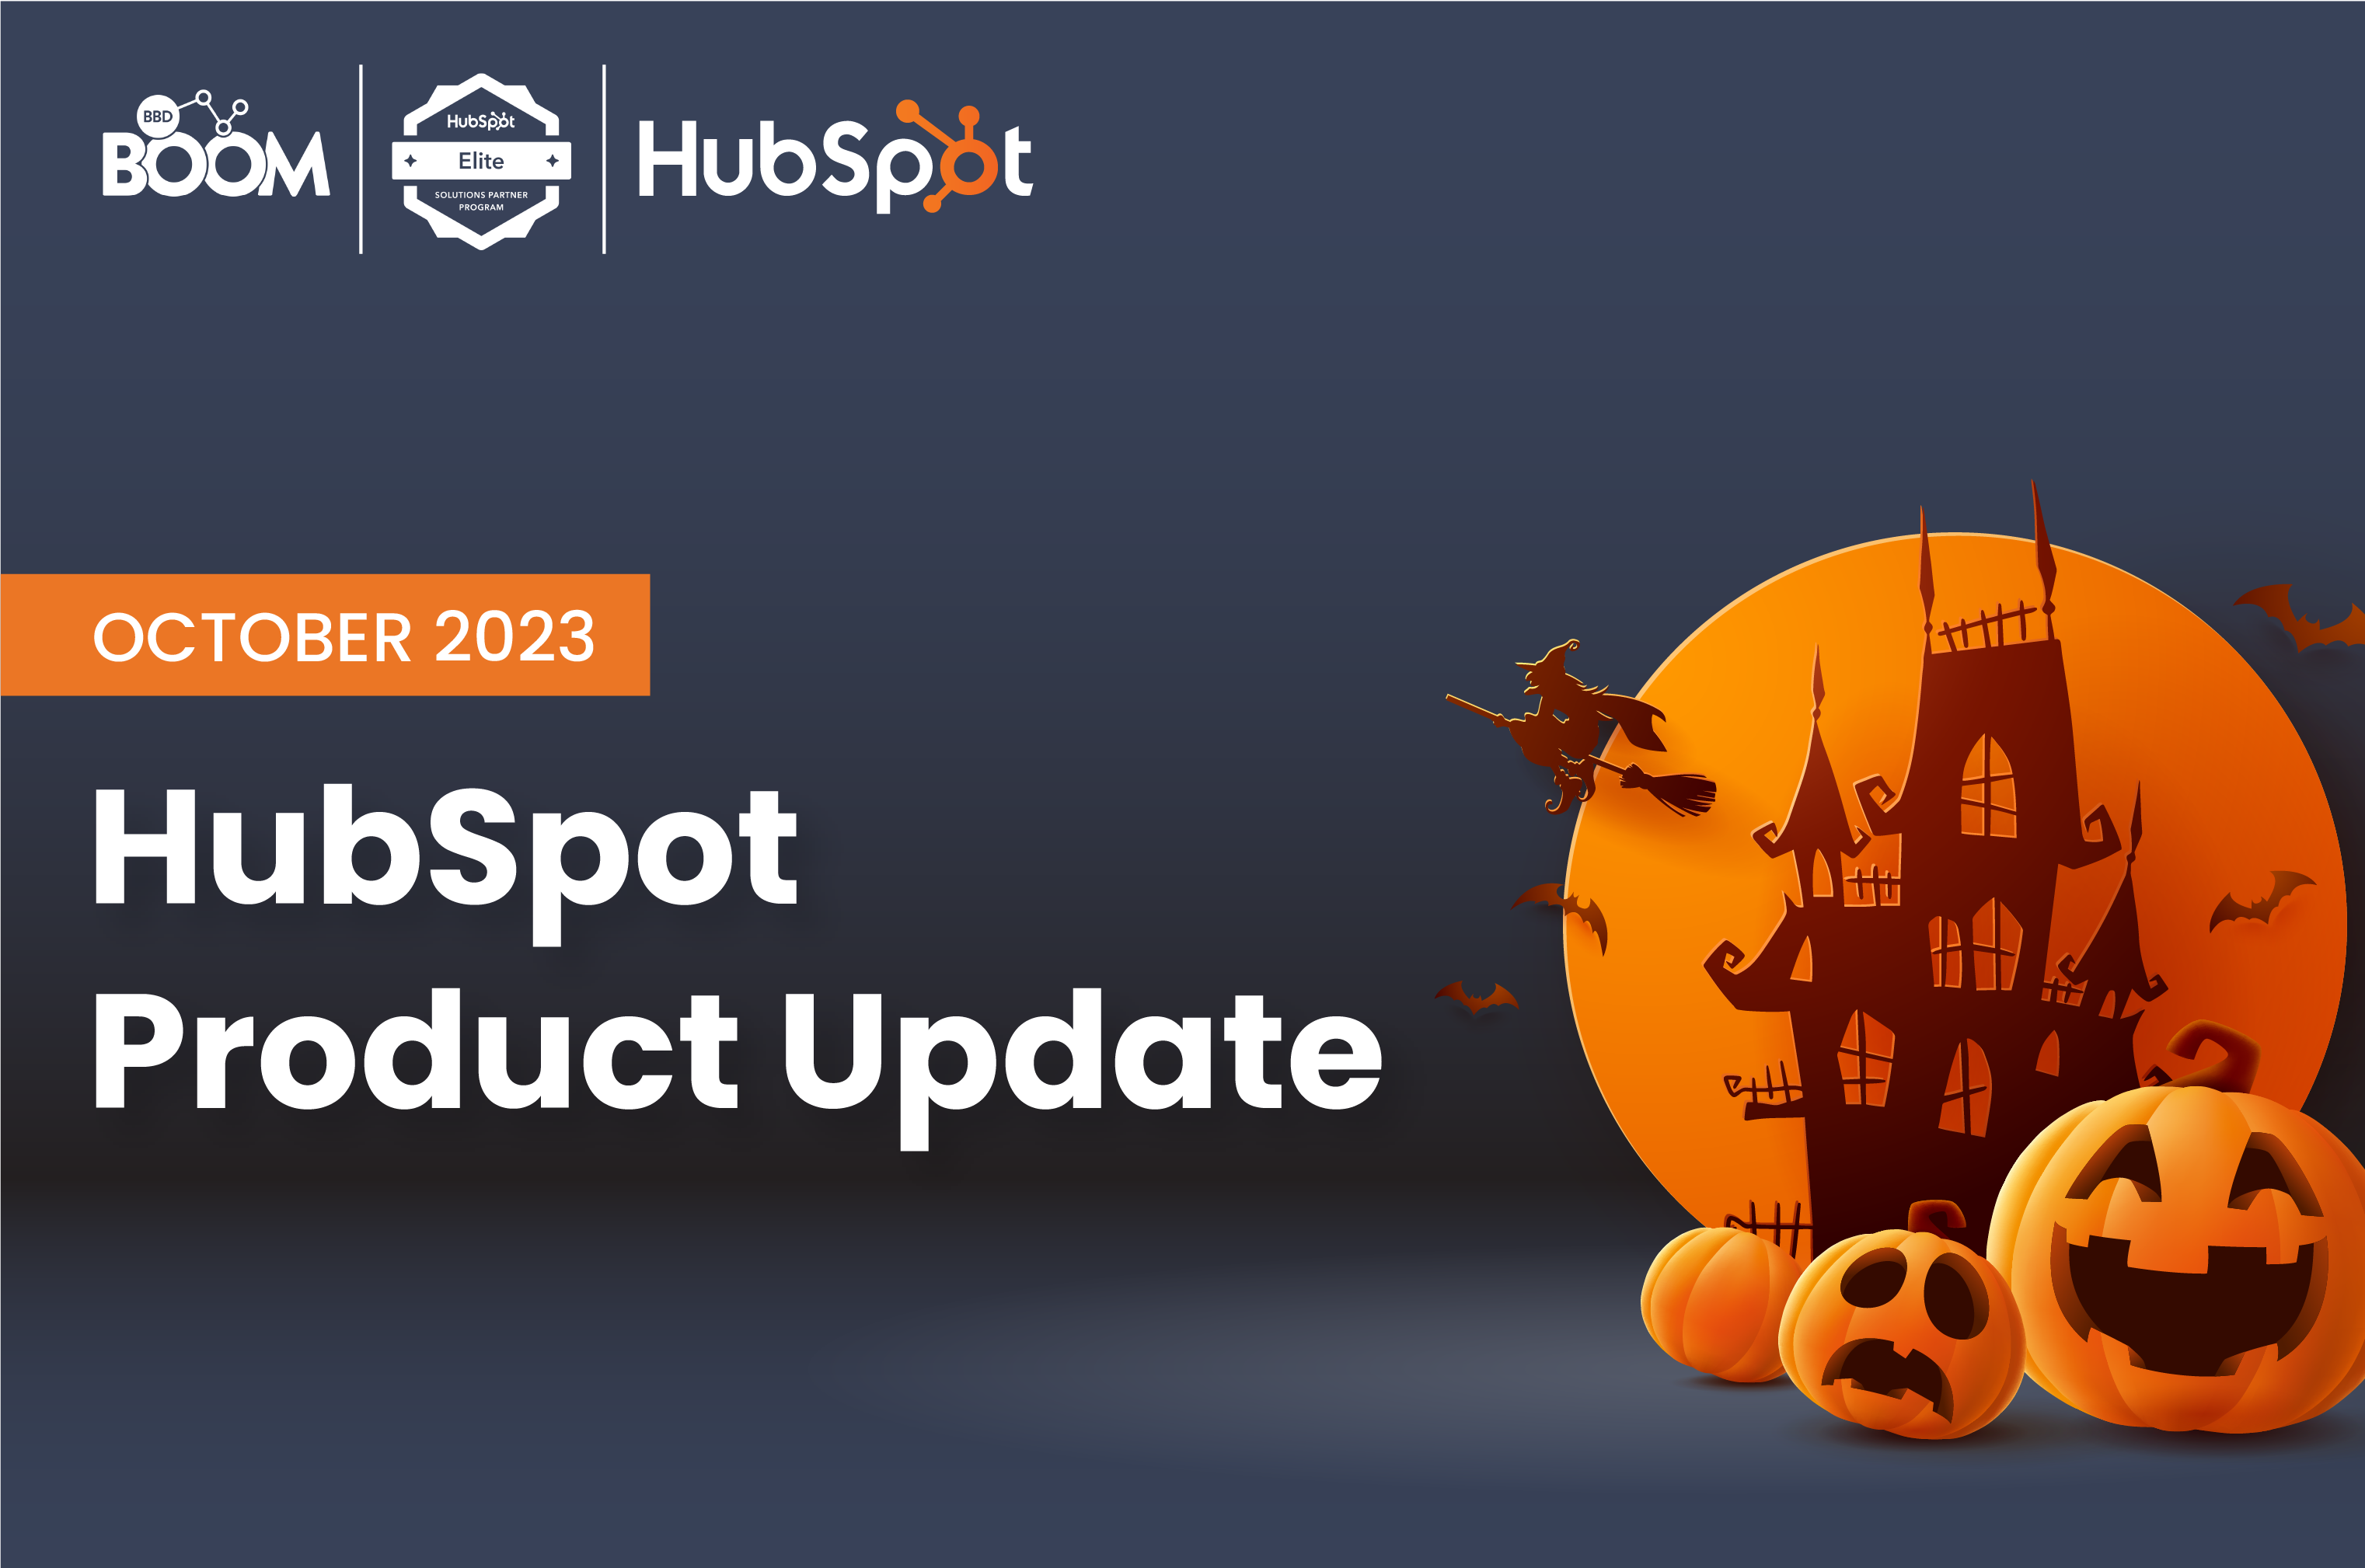 HubSpot Product Update: October 2023